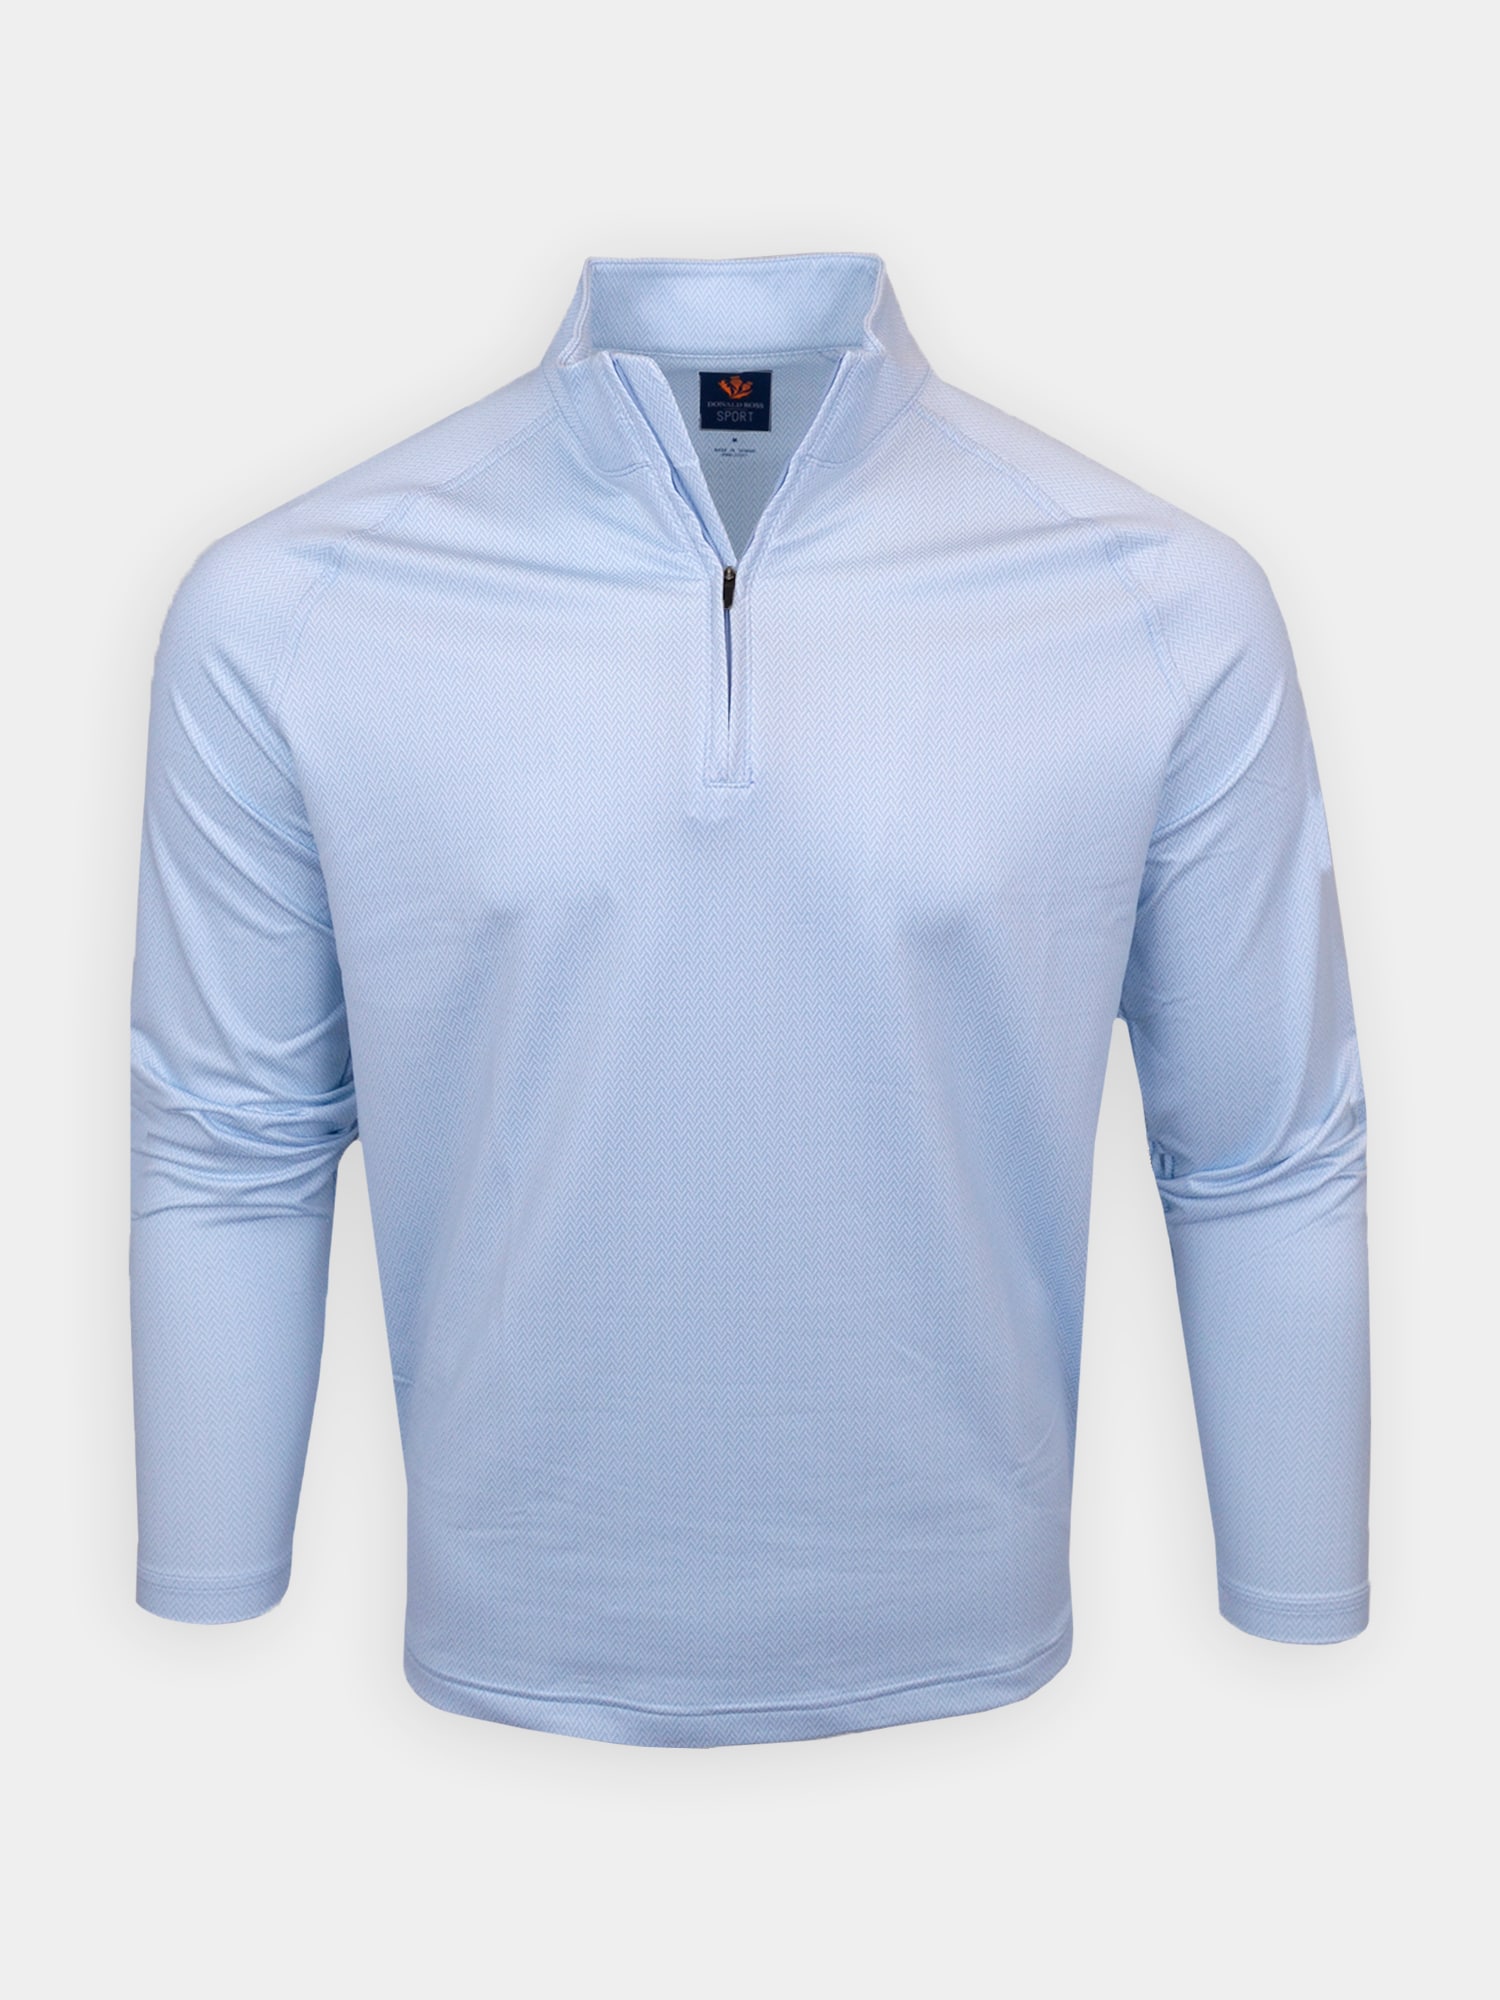 Men's Interlock Print Fleece - Sport Fit - Donald Ross Sportswear